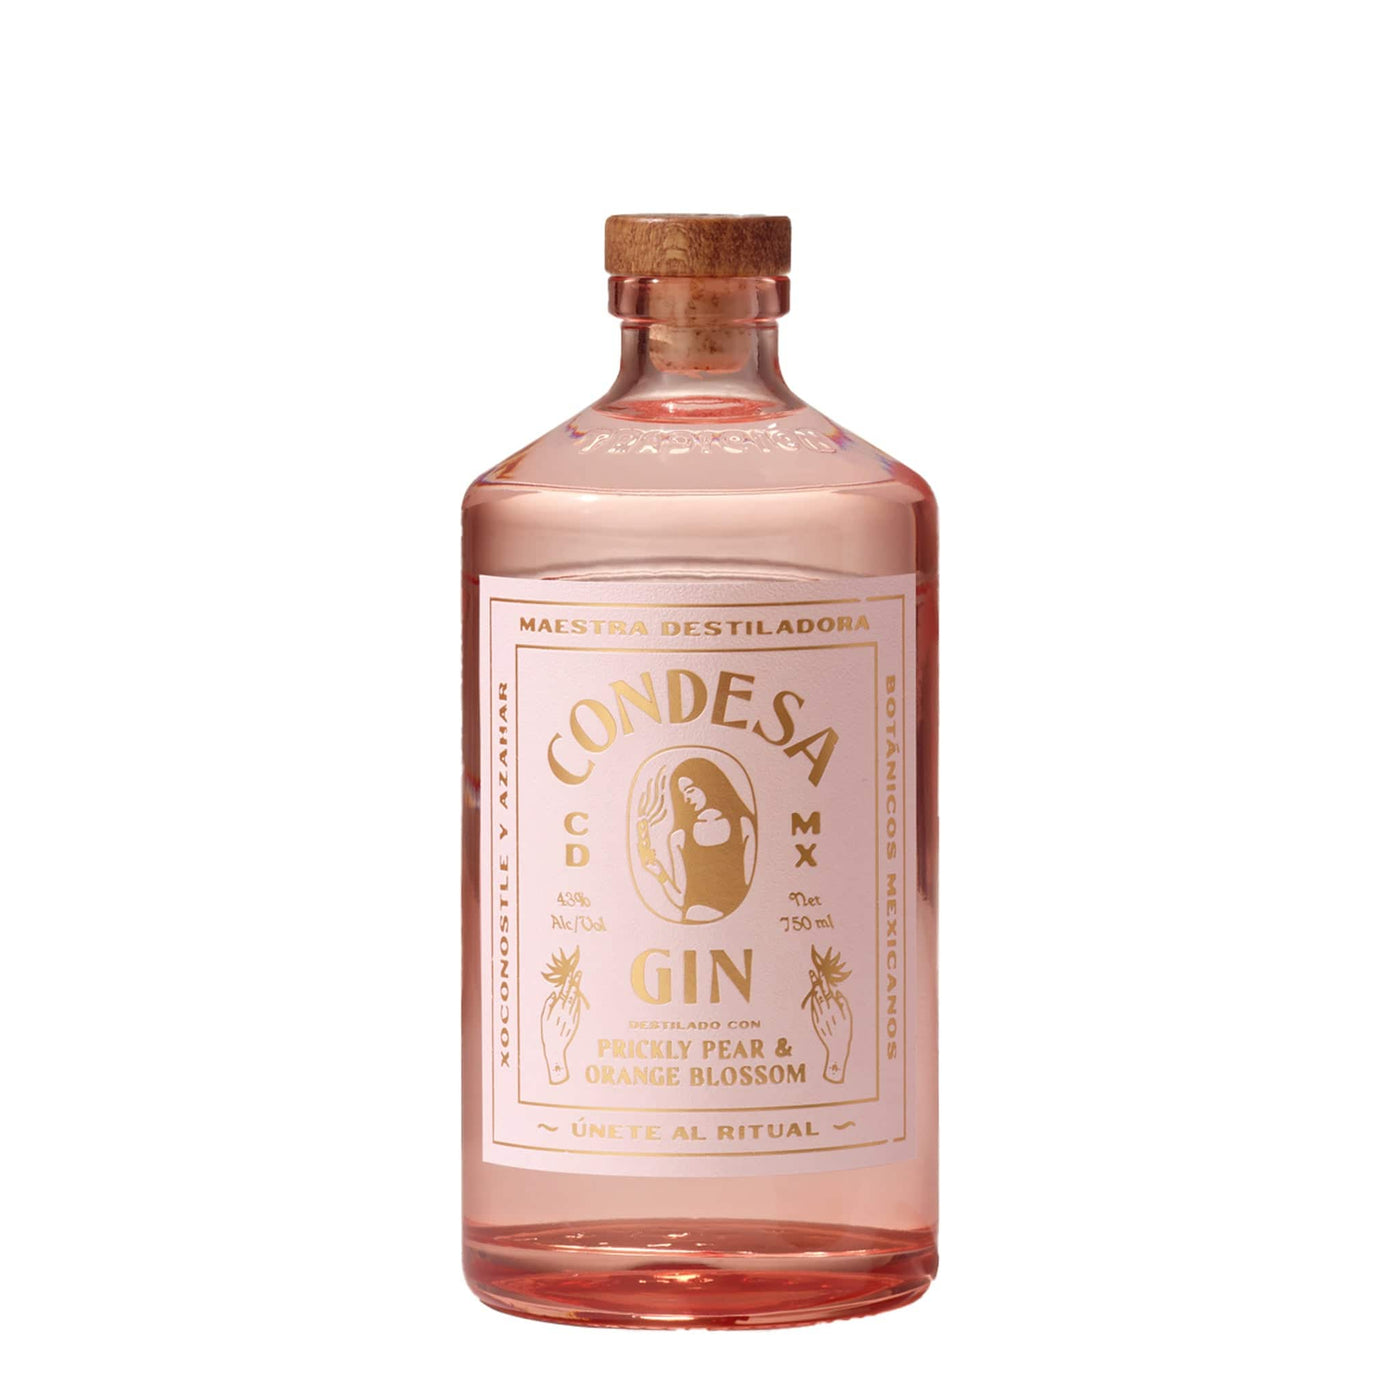 Condesa Prickly Pear & Orange Blossom Gin - Spiritly